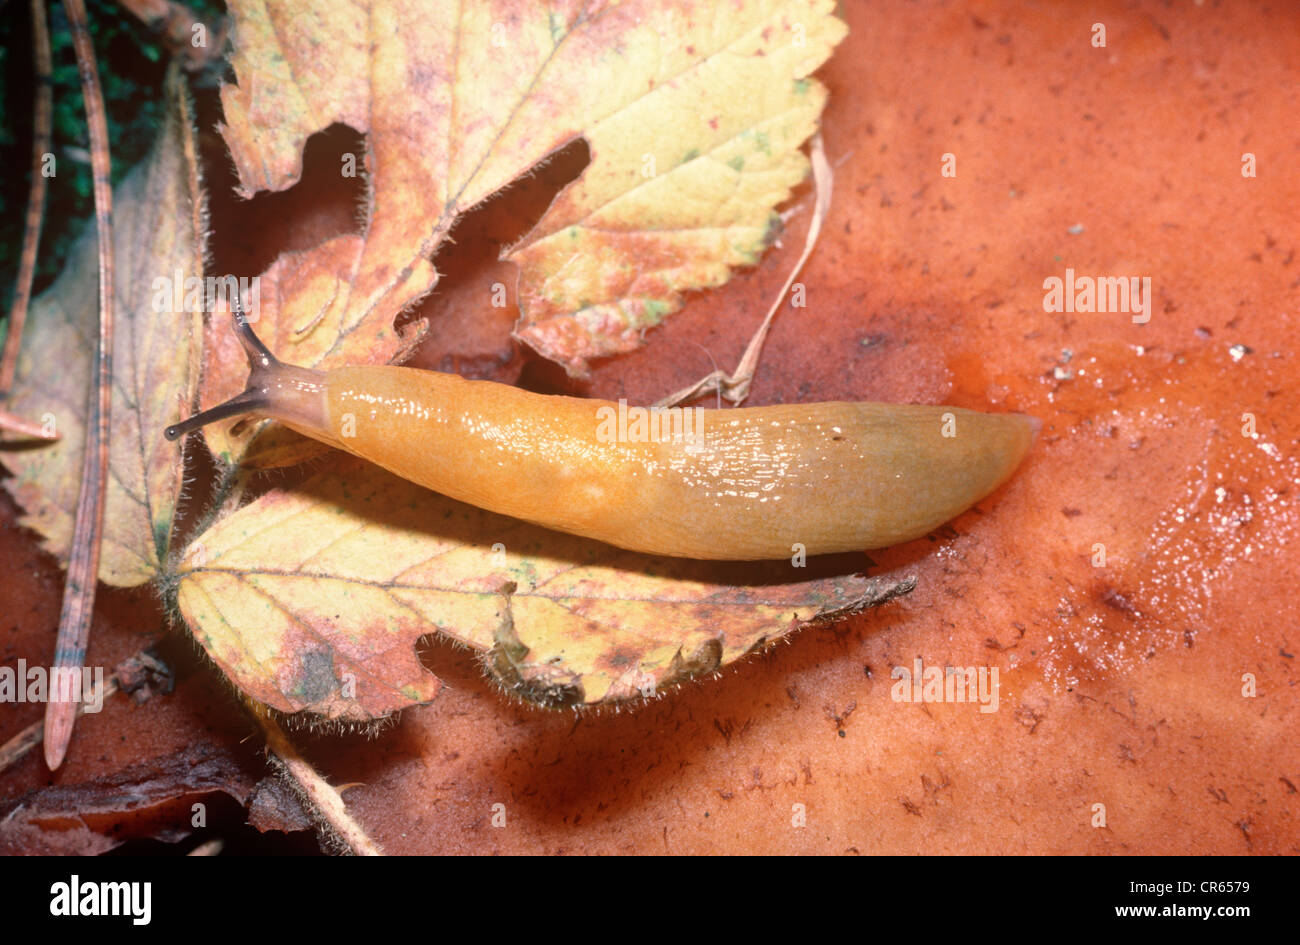 Lemon slug (Malacolimax / Limax tenellus: Limacidae) on a fungus in woodland UK Stock Photo